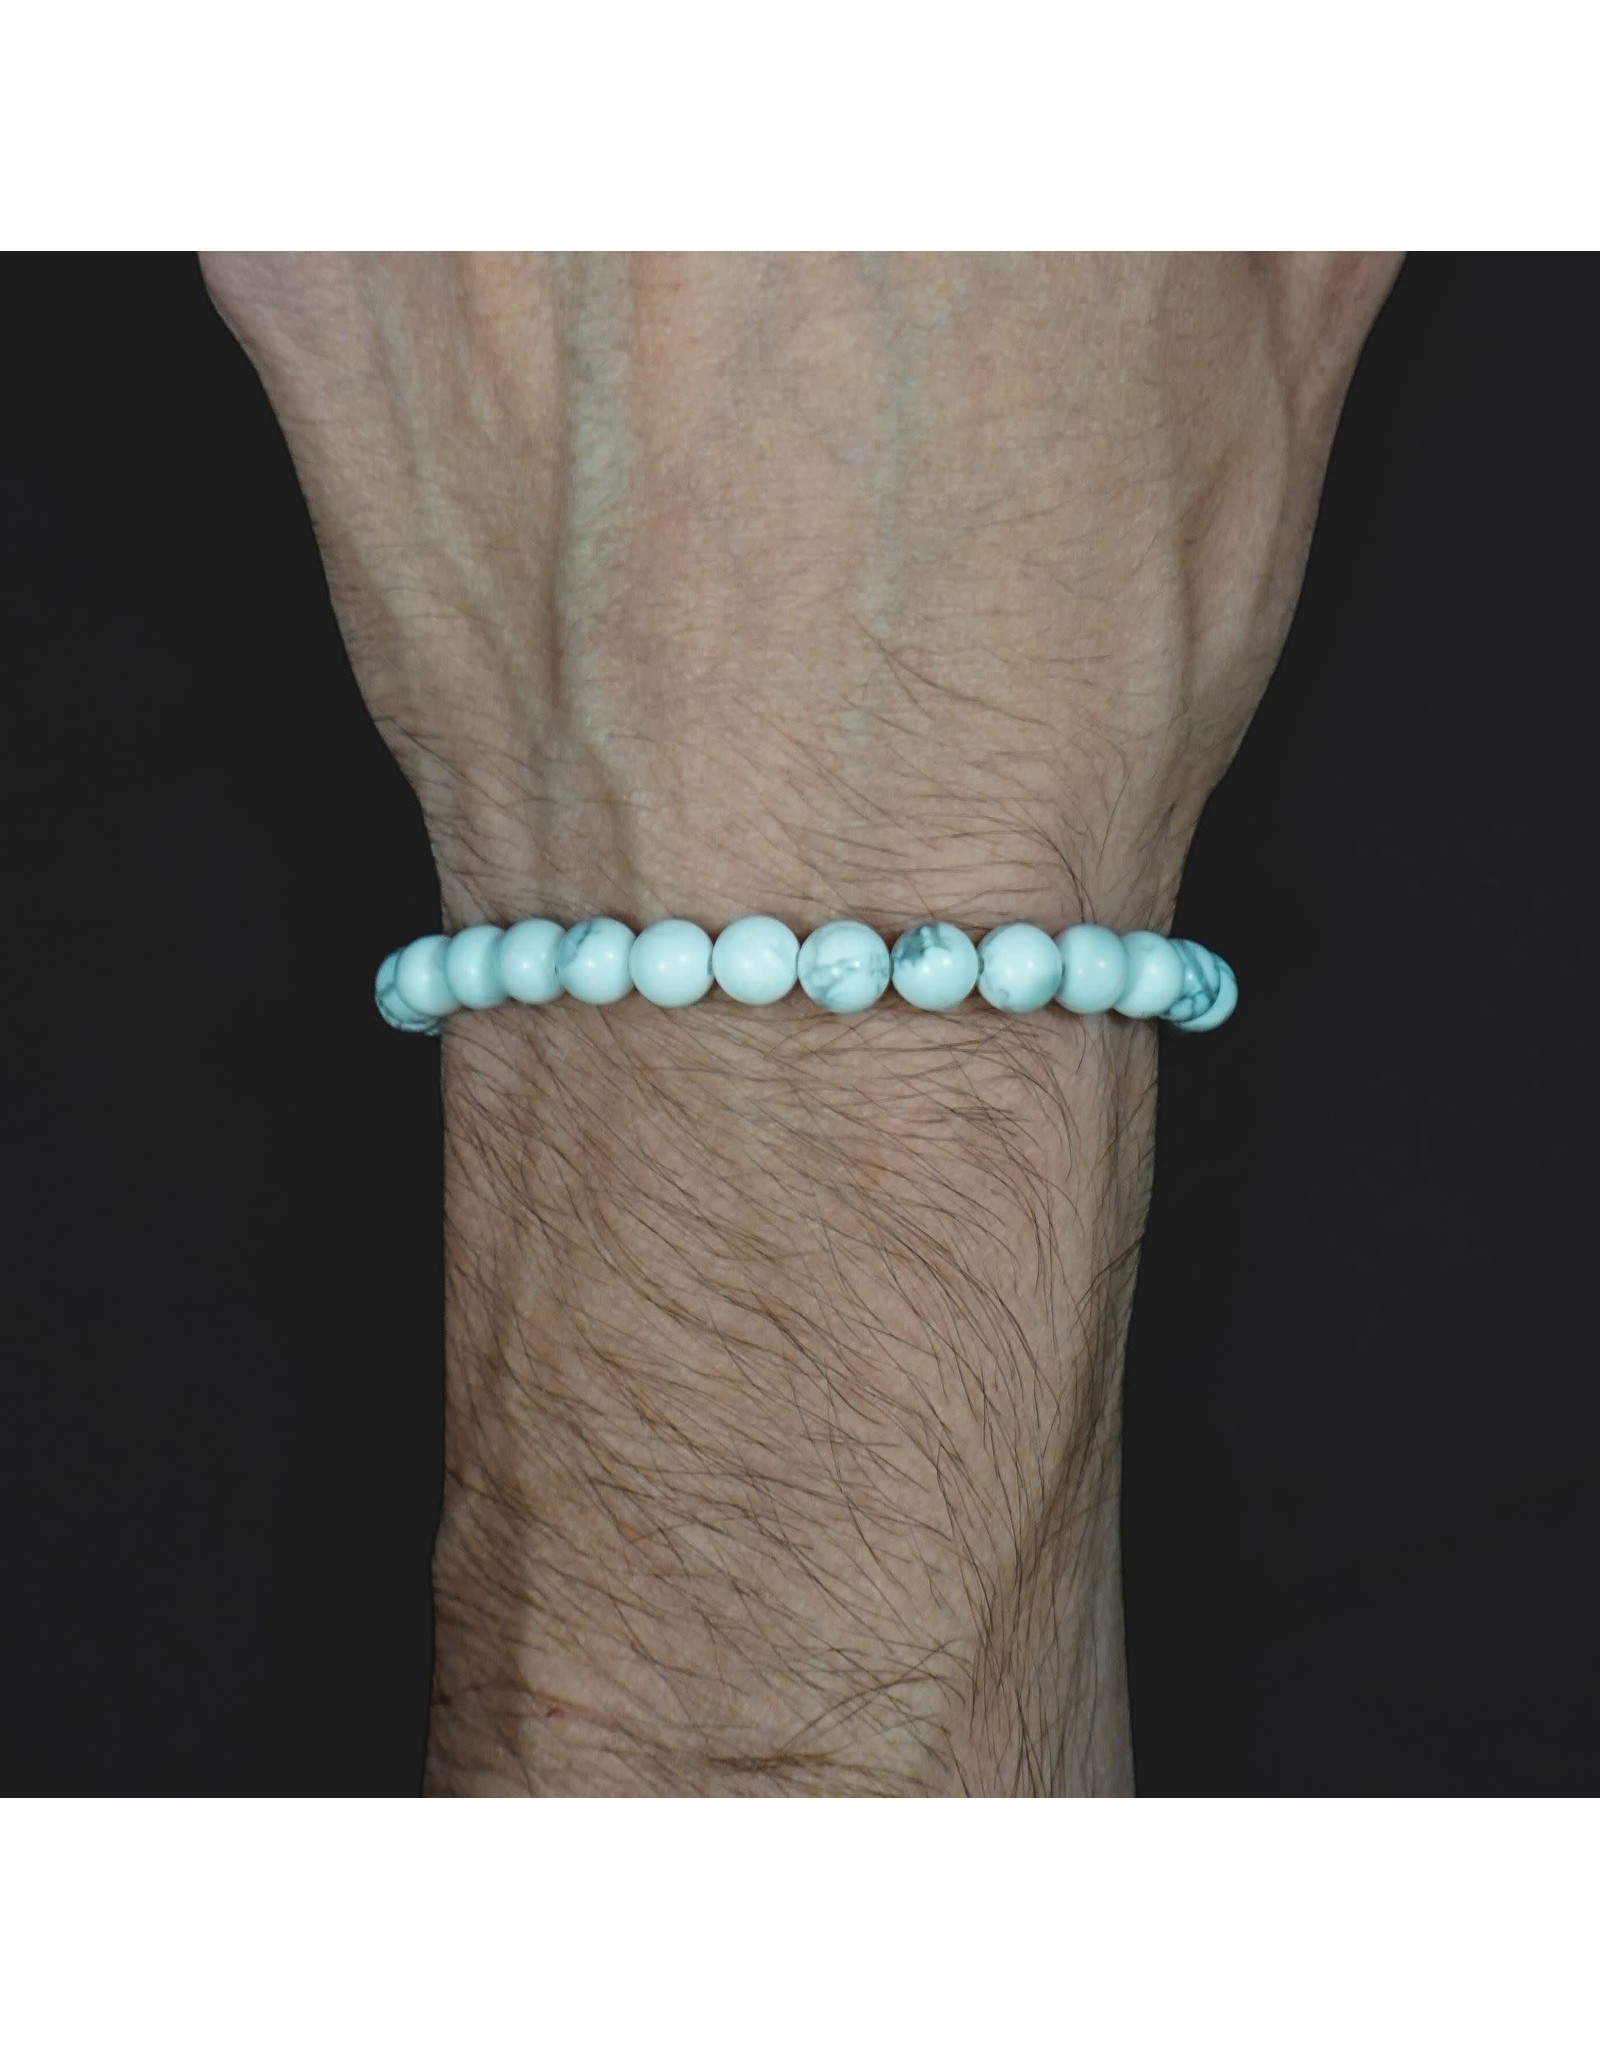 Elastic Bracelet 6mm Round Beads - White Howlite